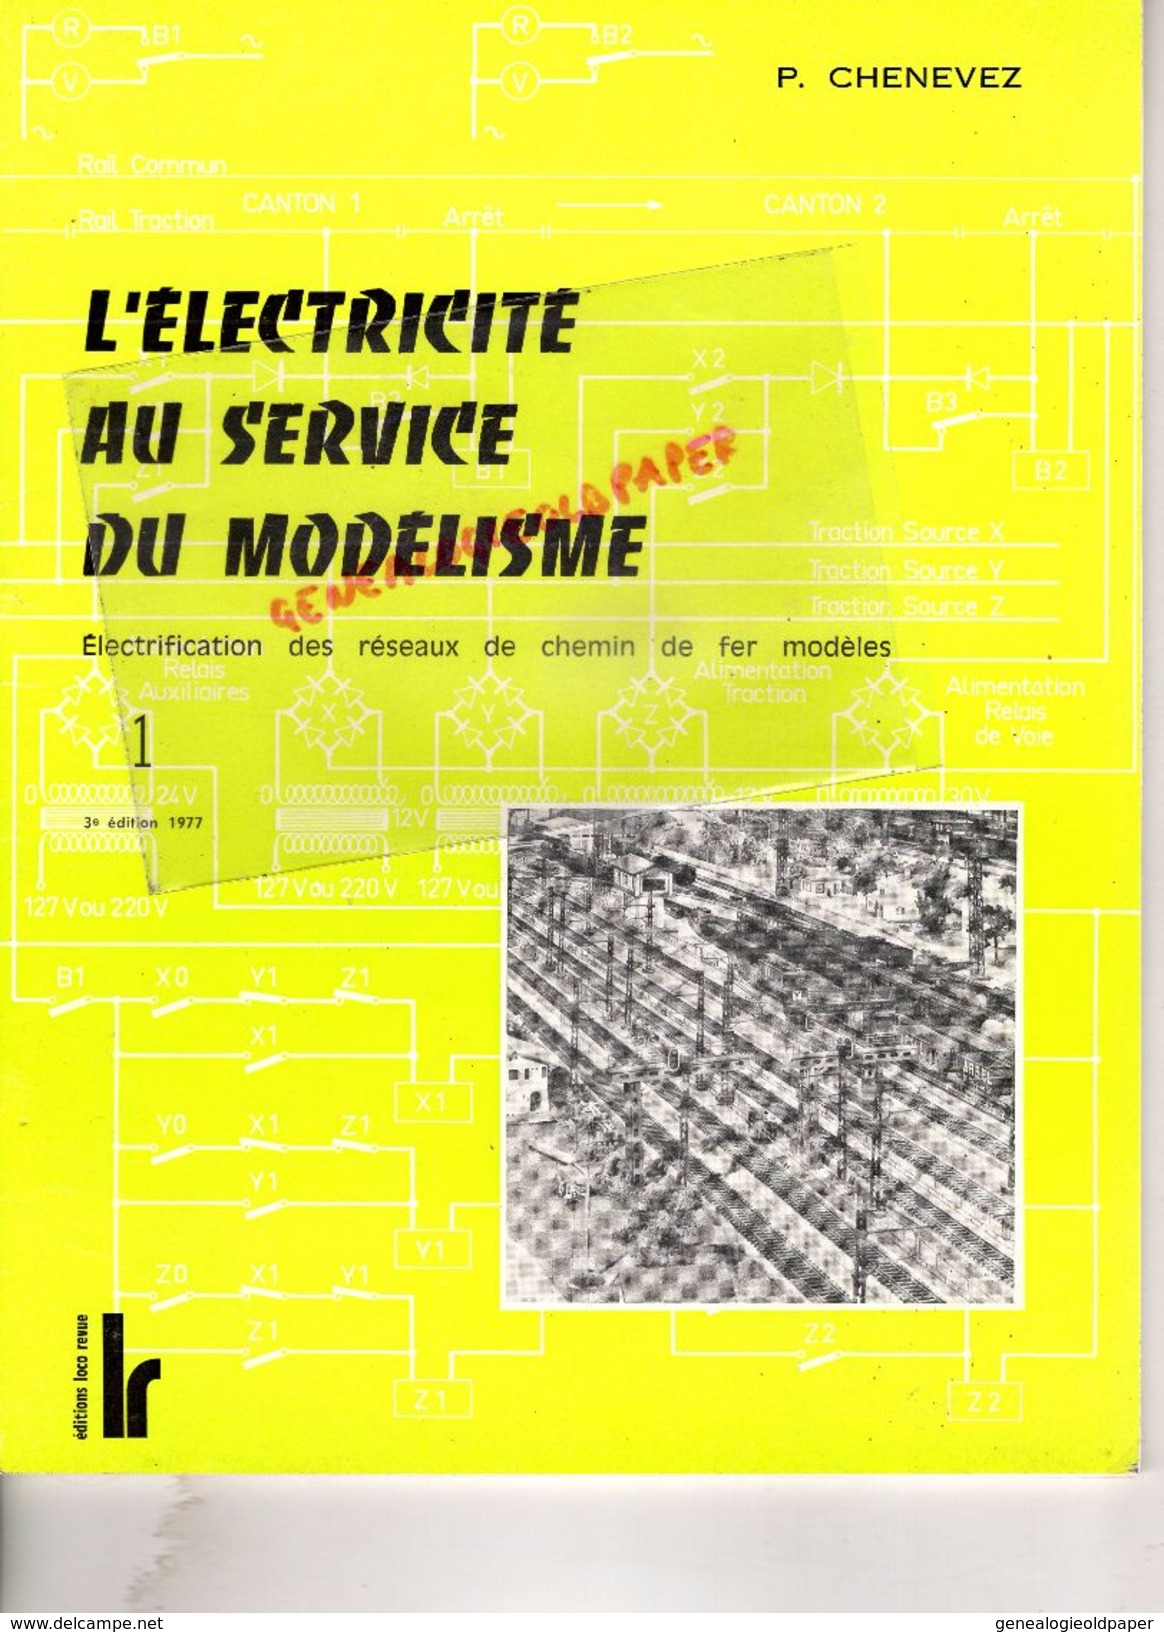 CATALOGUE JOUETS- L' ELECTRICITE AU SERVICE DU MODELISME- CHEMIN DE FER -R. CHENEVEZ-TOME 1-1977-LOCO REVUE AURAY-GARE - Railway & Tramway